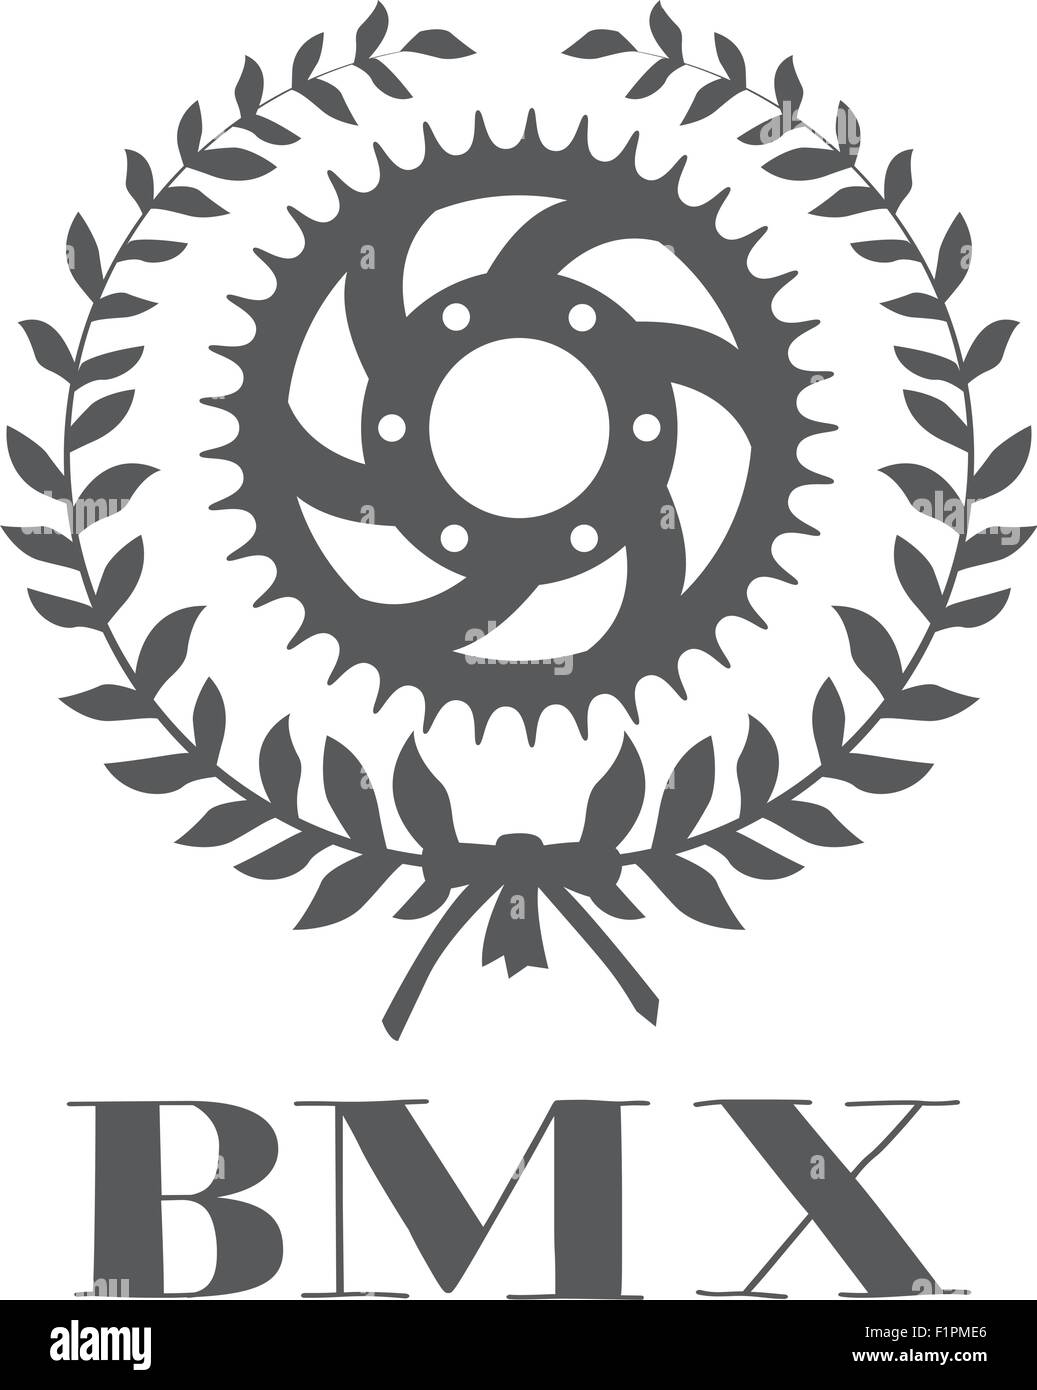 BMX concept with cogwheel inside laurel wreath Vector illustration Stock Vector